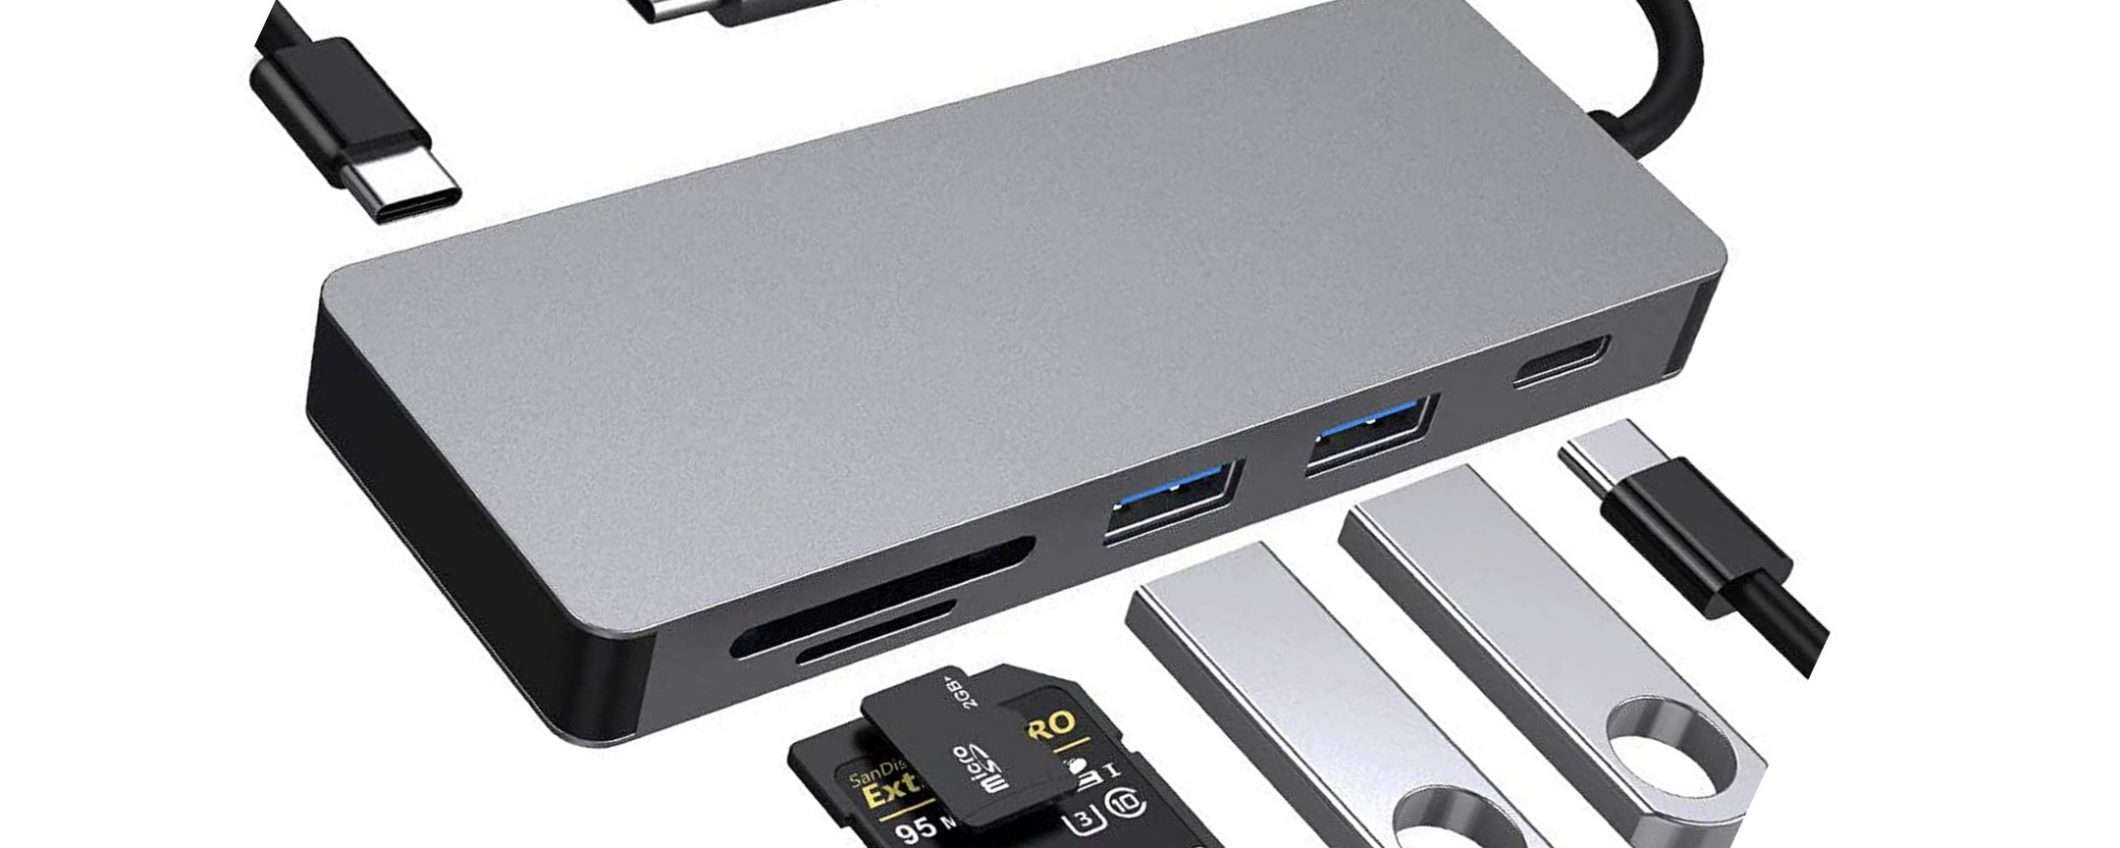 HUB USB-C 6 in 1 per MacBook e PC a meno di 10 euro